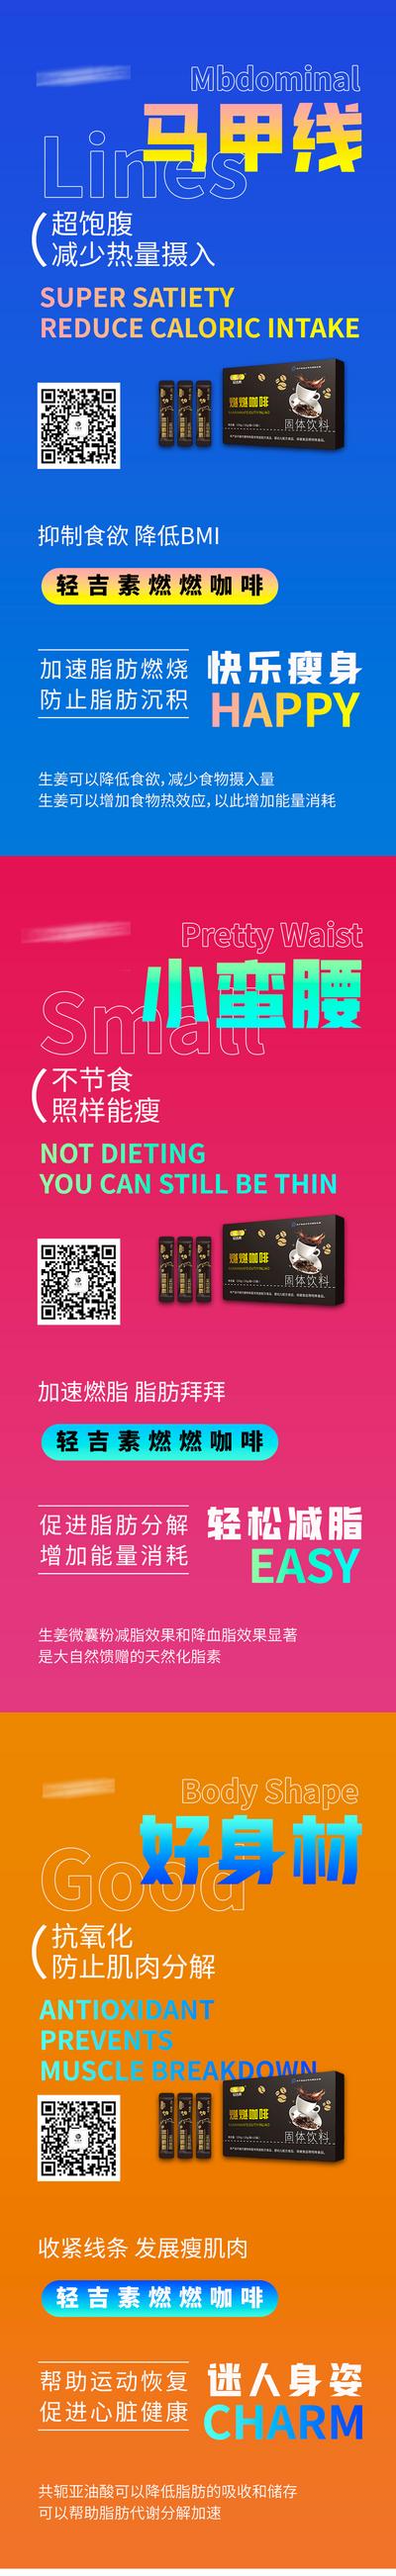 南门网 广告 海报 系列 减脂 减肥 瘦身 塑形 微商 新零售 产品 保健品